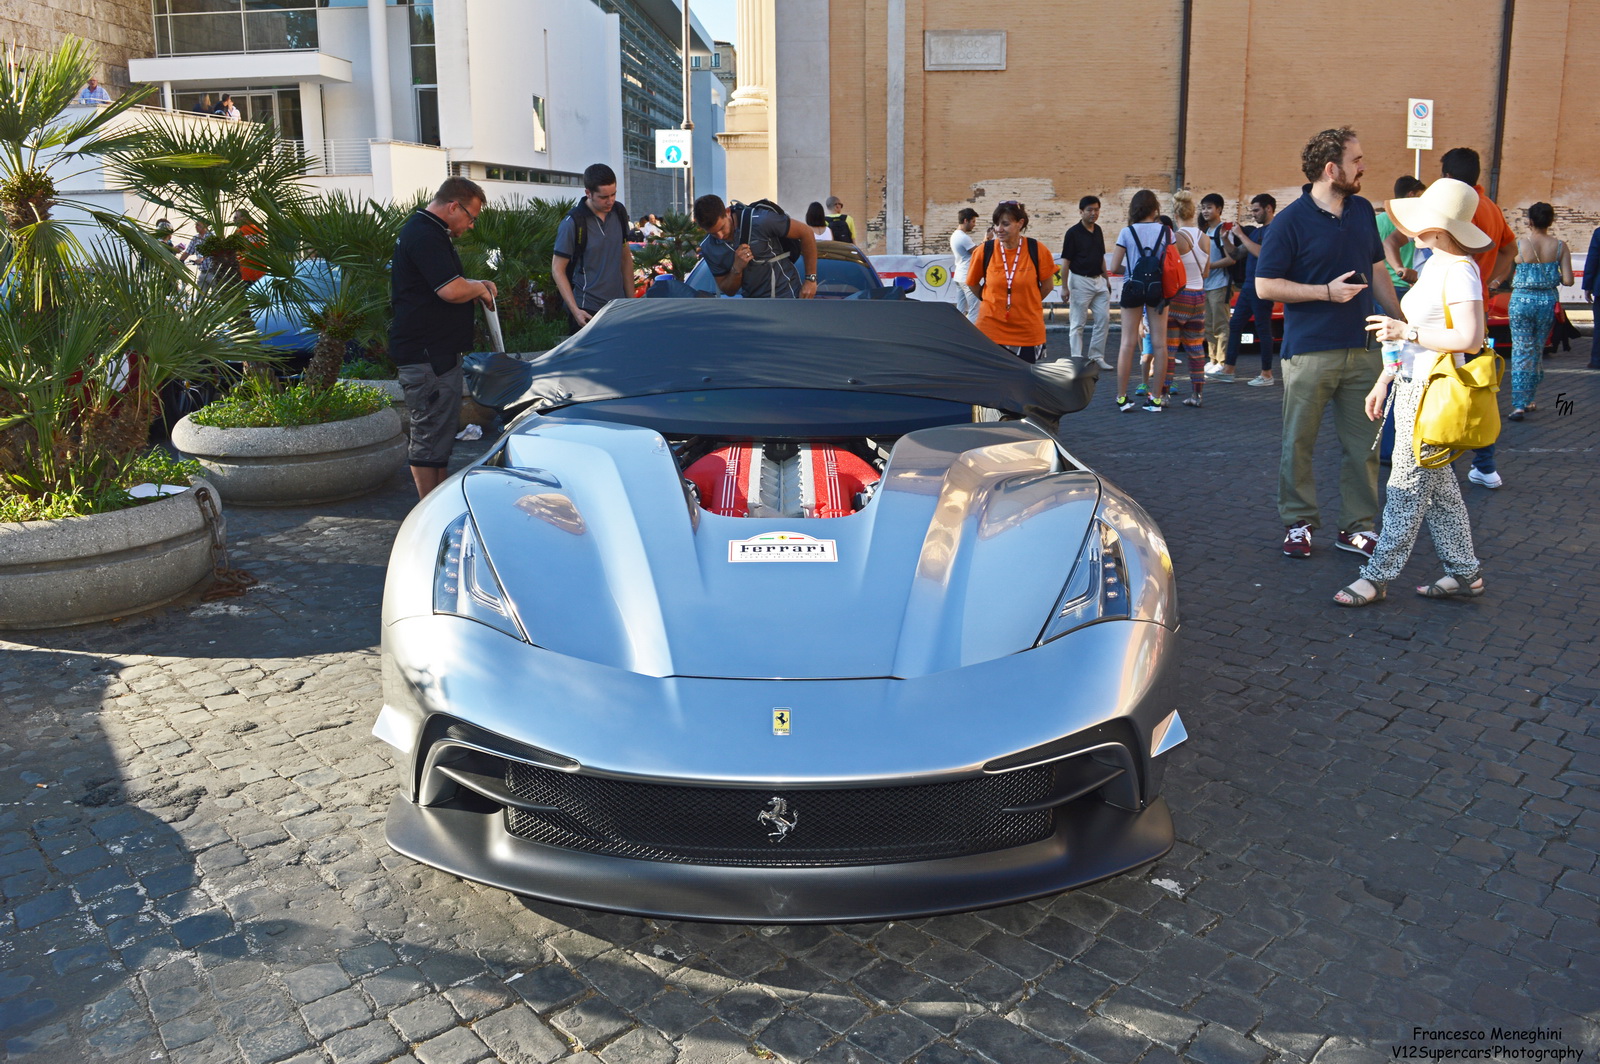 Unique Chrome Silver Ferrari F12 Trs Spotted In Rome Carscoops